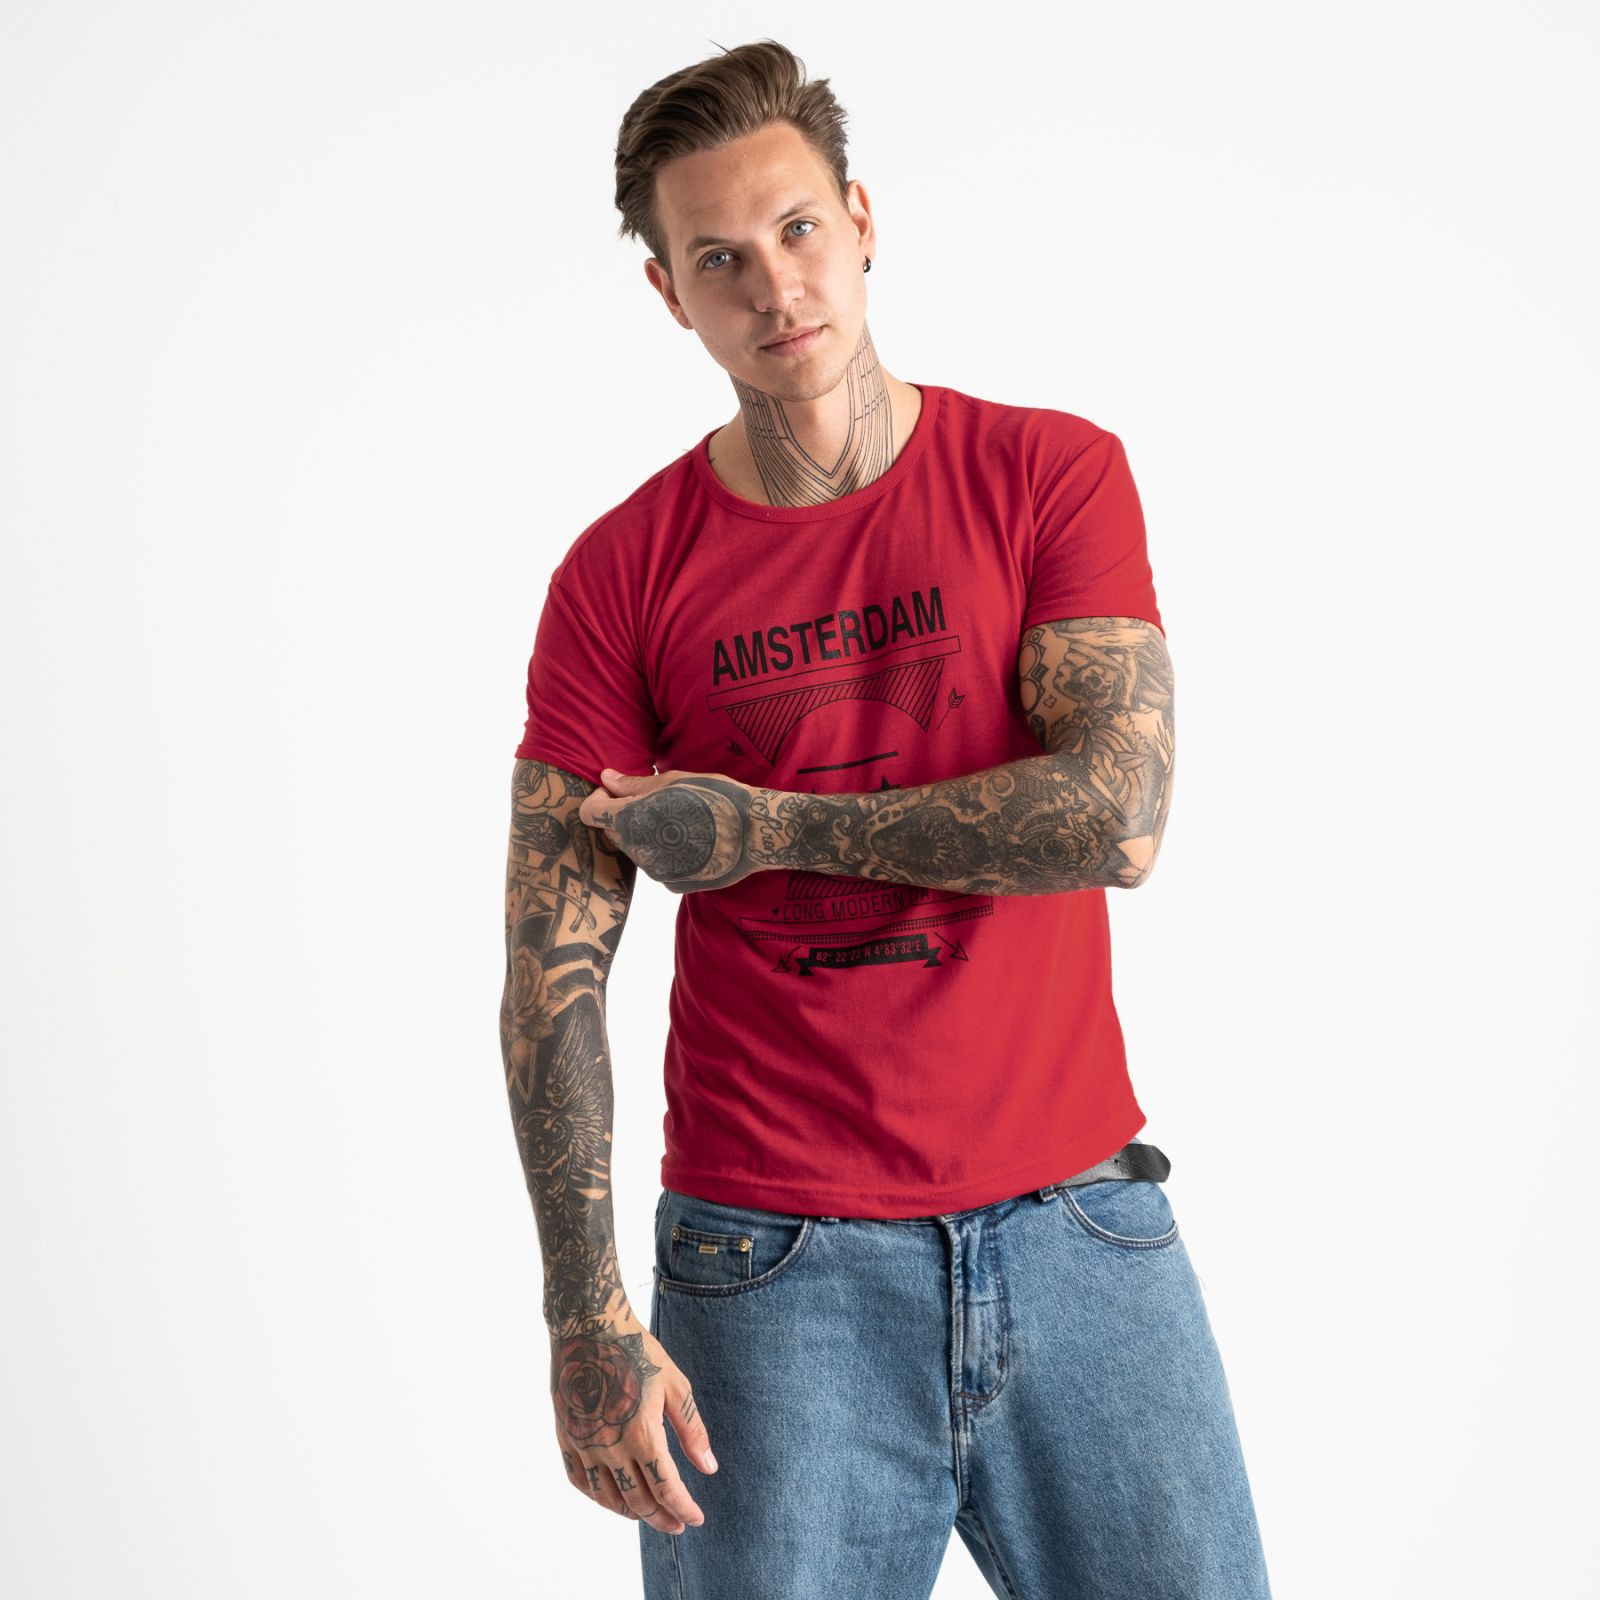 2604-3 красная футболка мужская с принтом (4 ед. размеры: M.L.XL.2XL)